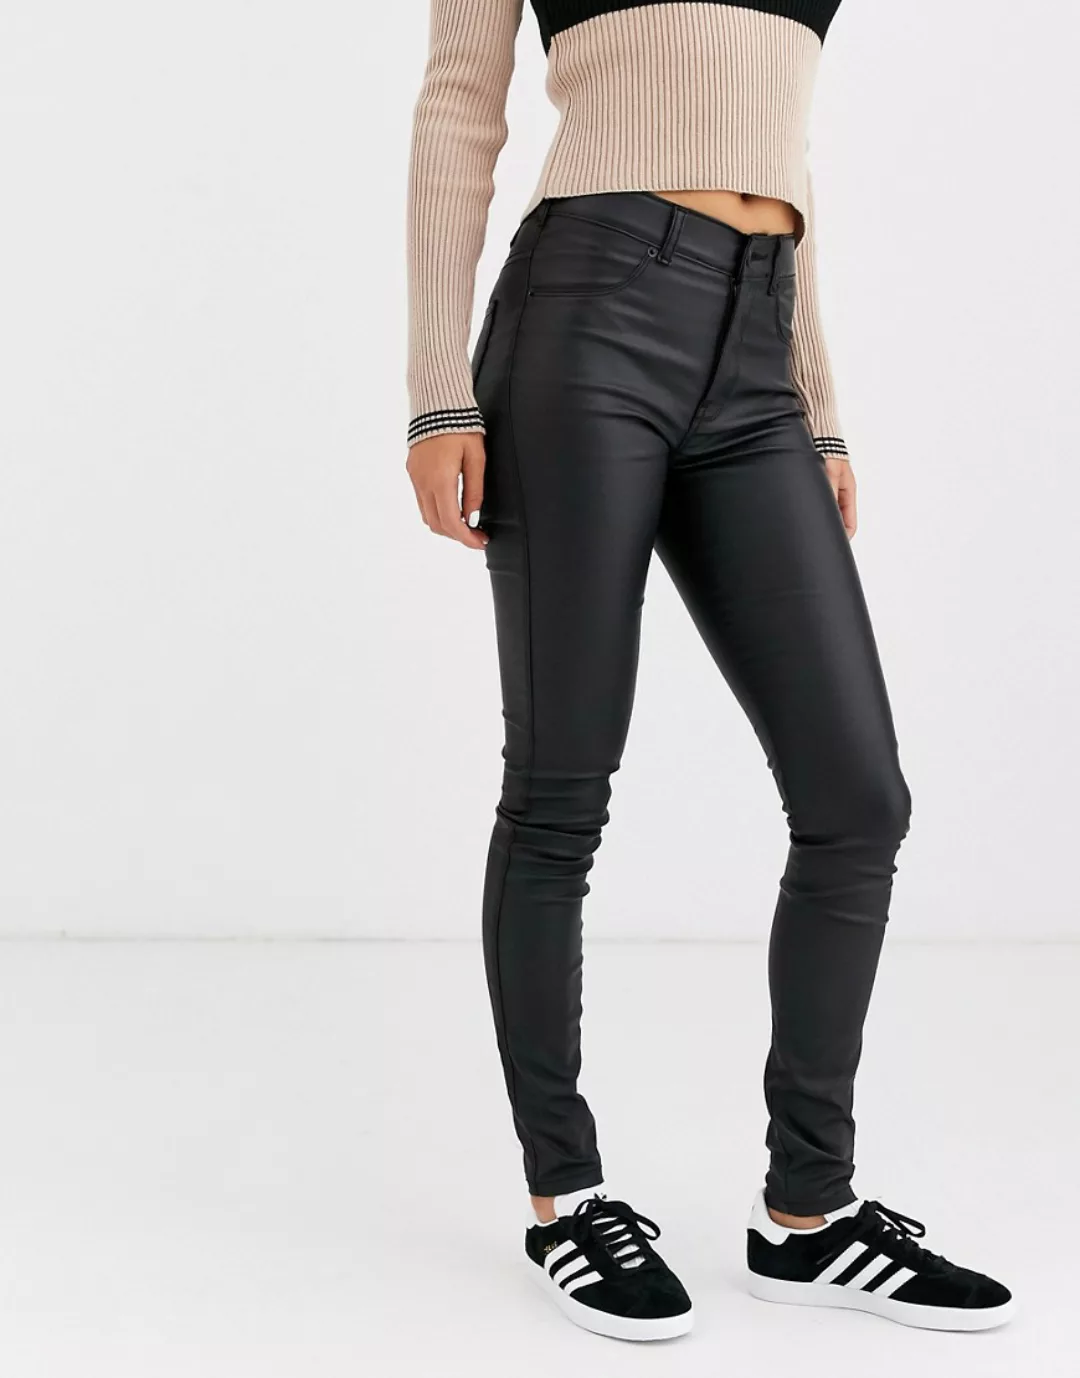 Dr Denim – Solitaire – Superenge Jeans in Lederoptik mit sehr hohem Taillen günstig online kaufen